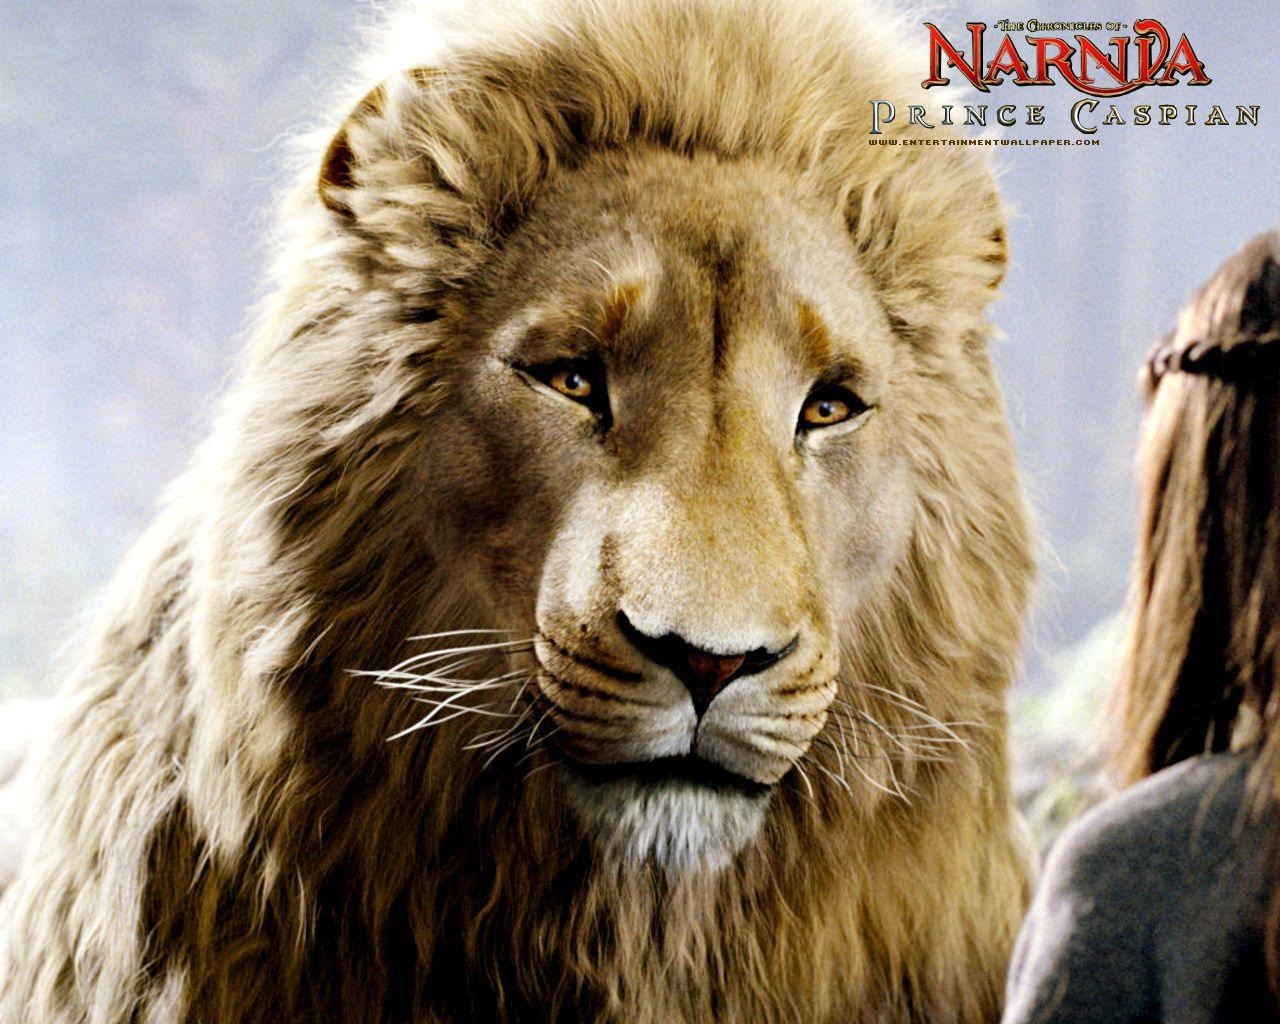 Le Monde de Narnia 2: Prince Caspian #5 - 1280x1024